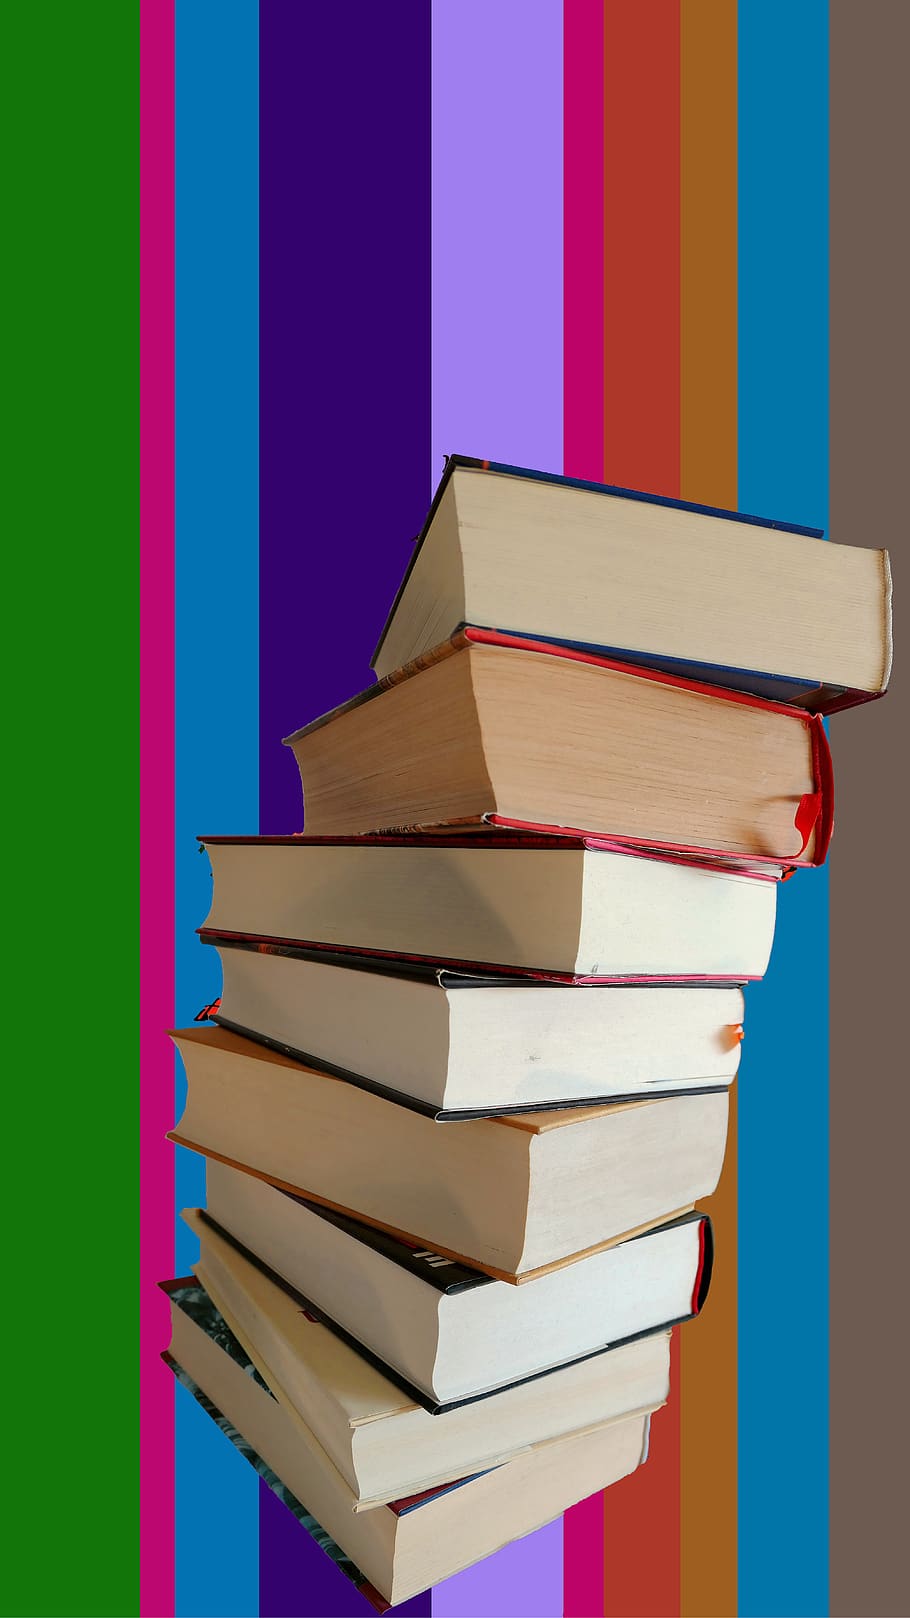 livro, ler, conhecimento, literatura, educação, leitura, estudo, livros, aprender, biblioteca